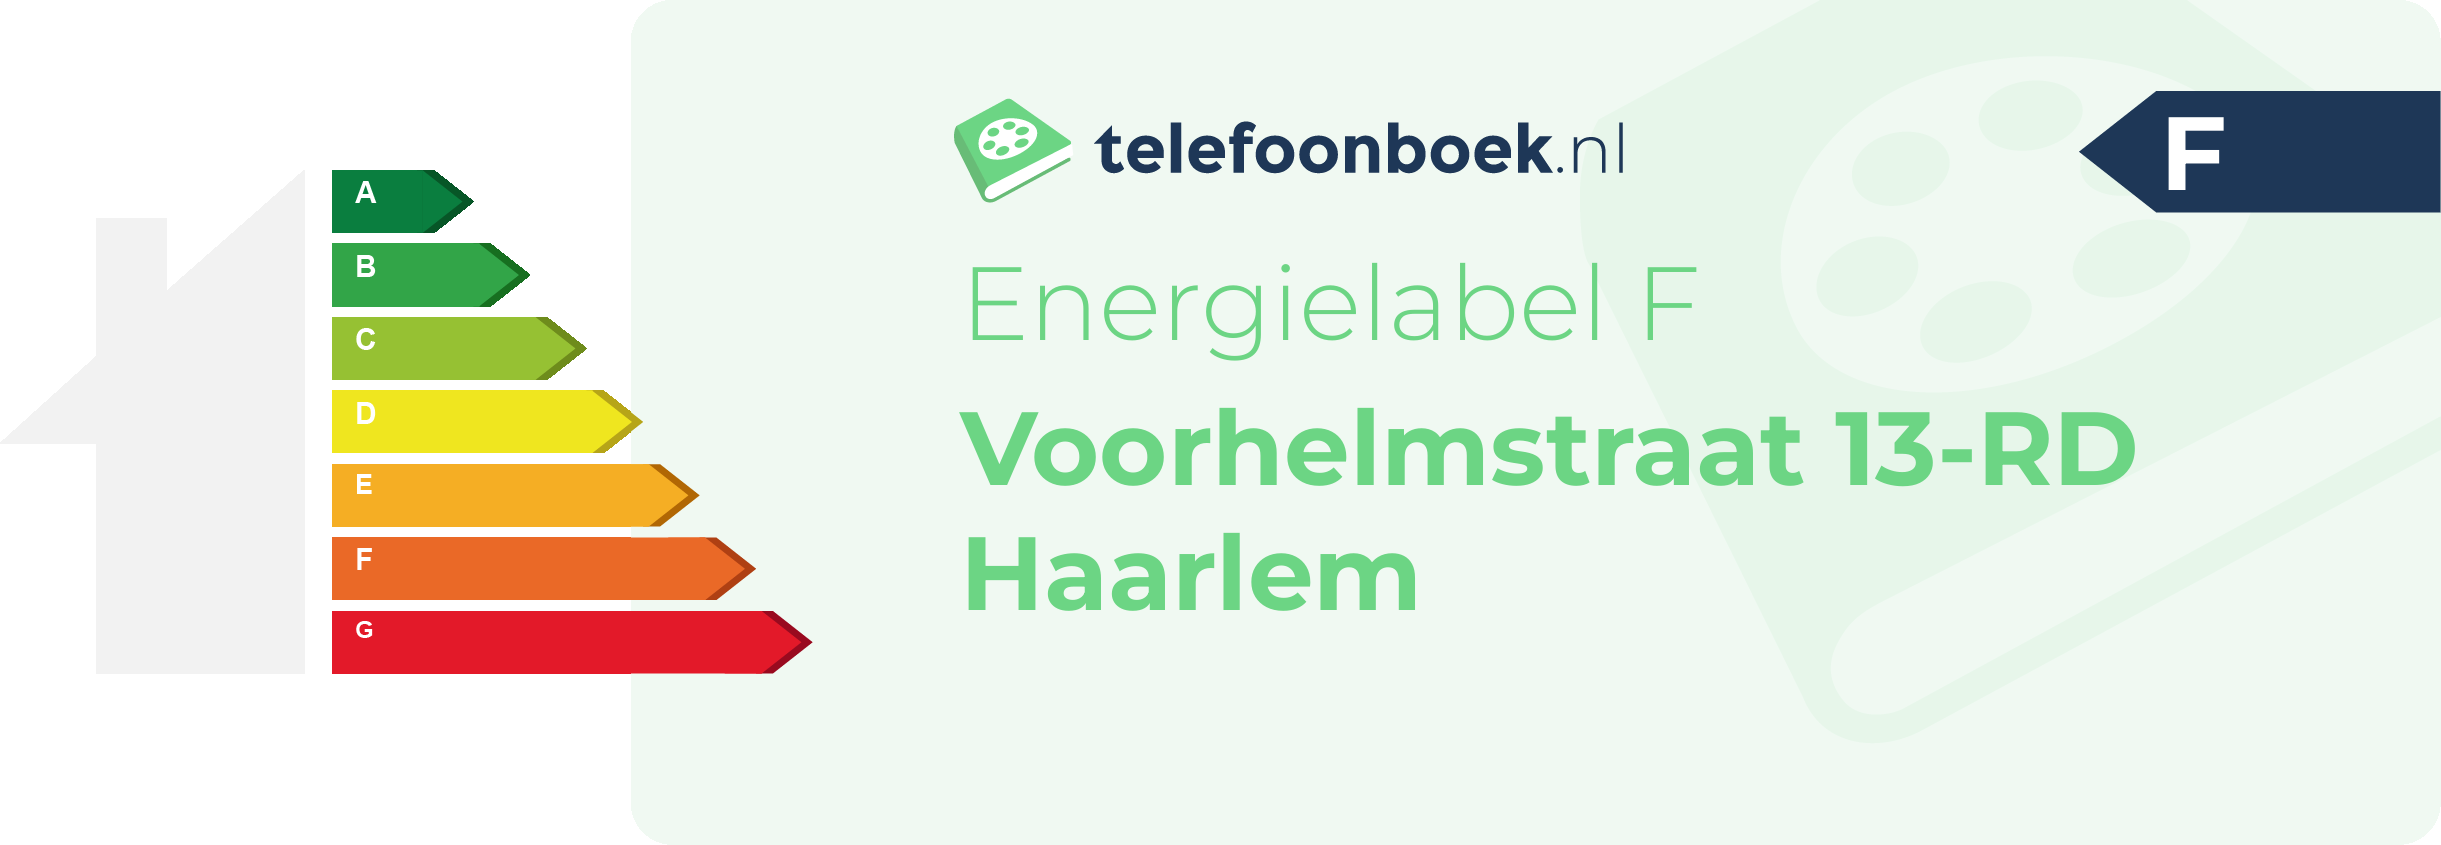 Energielabel Voorhelmstraat 13-RD Haarlem